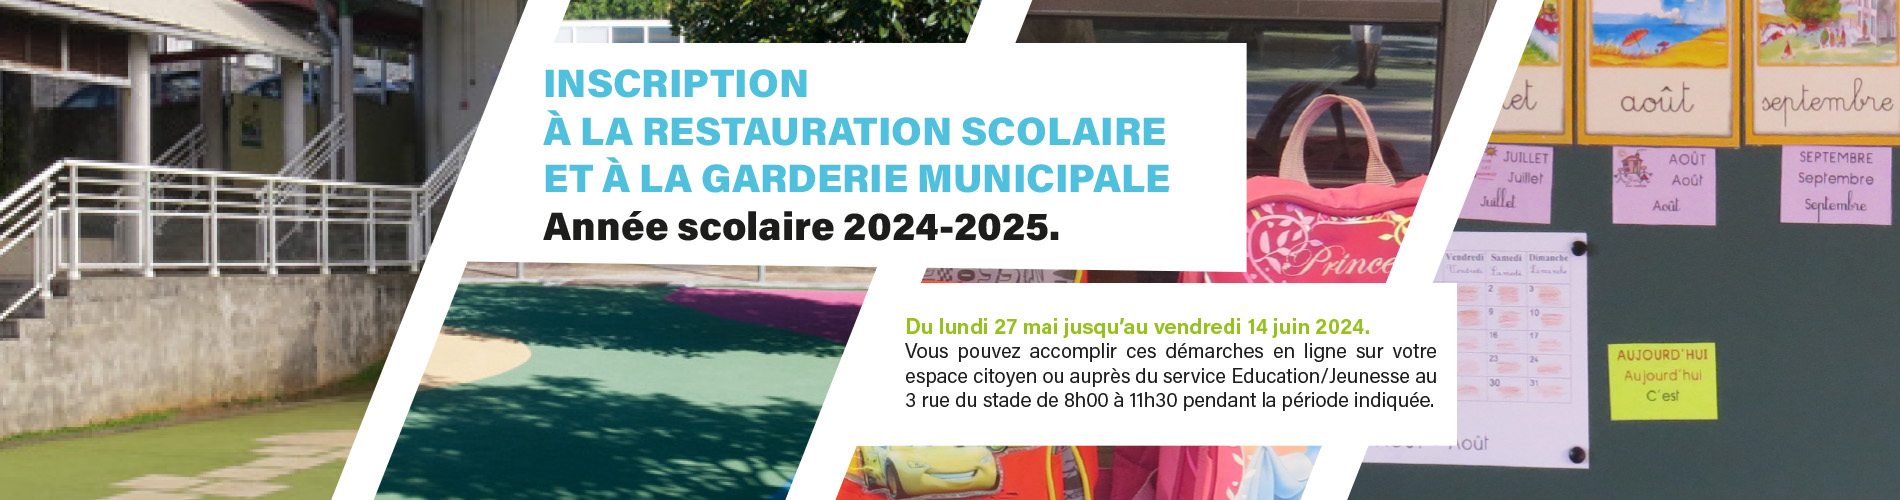 Bandeau inscription à la restauration scolaire et à la garderie municipale – année scolaire 2024-2025.